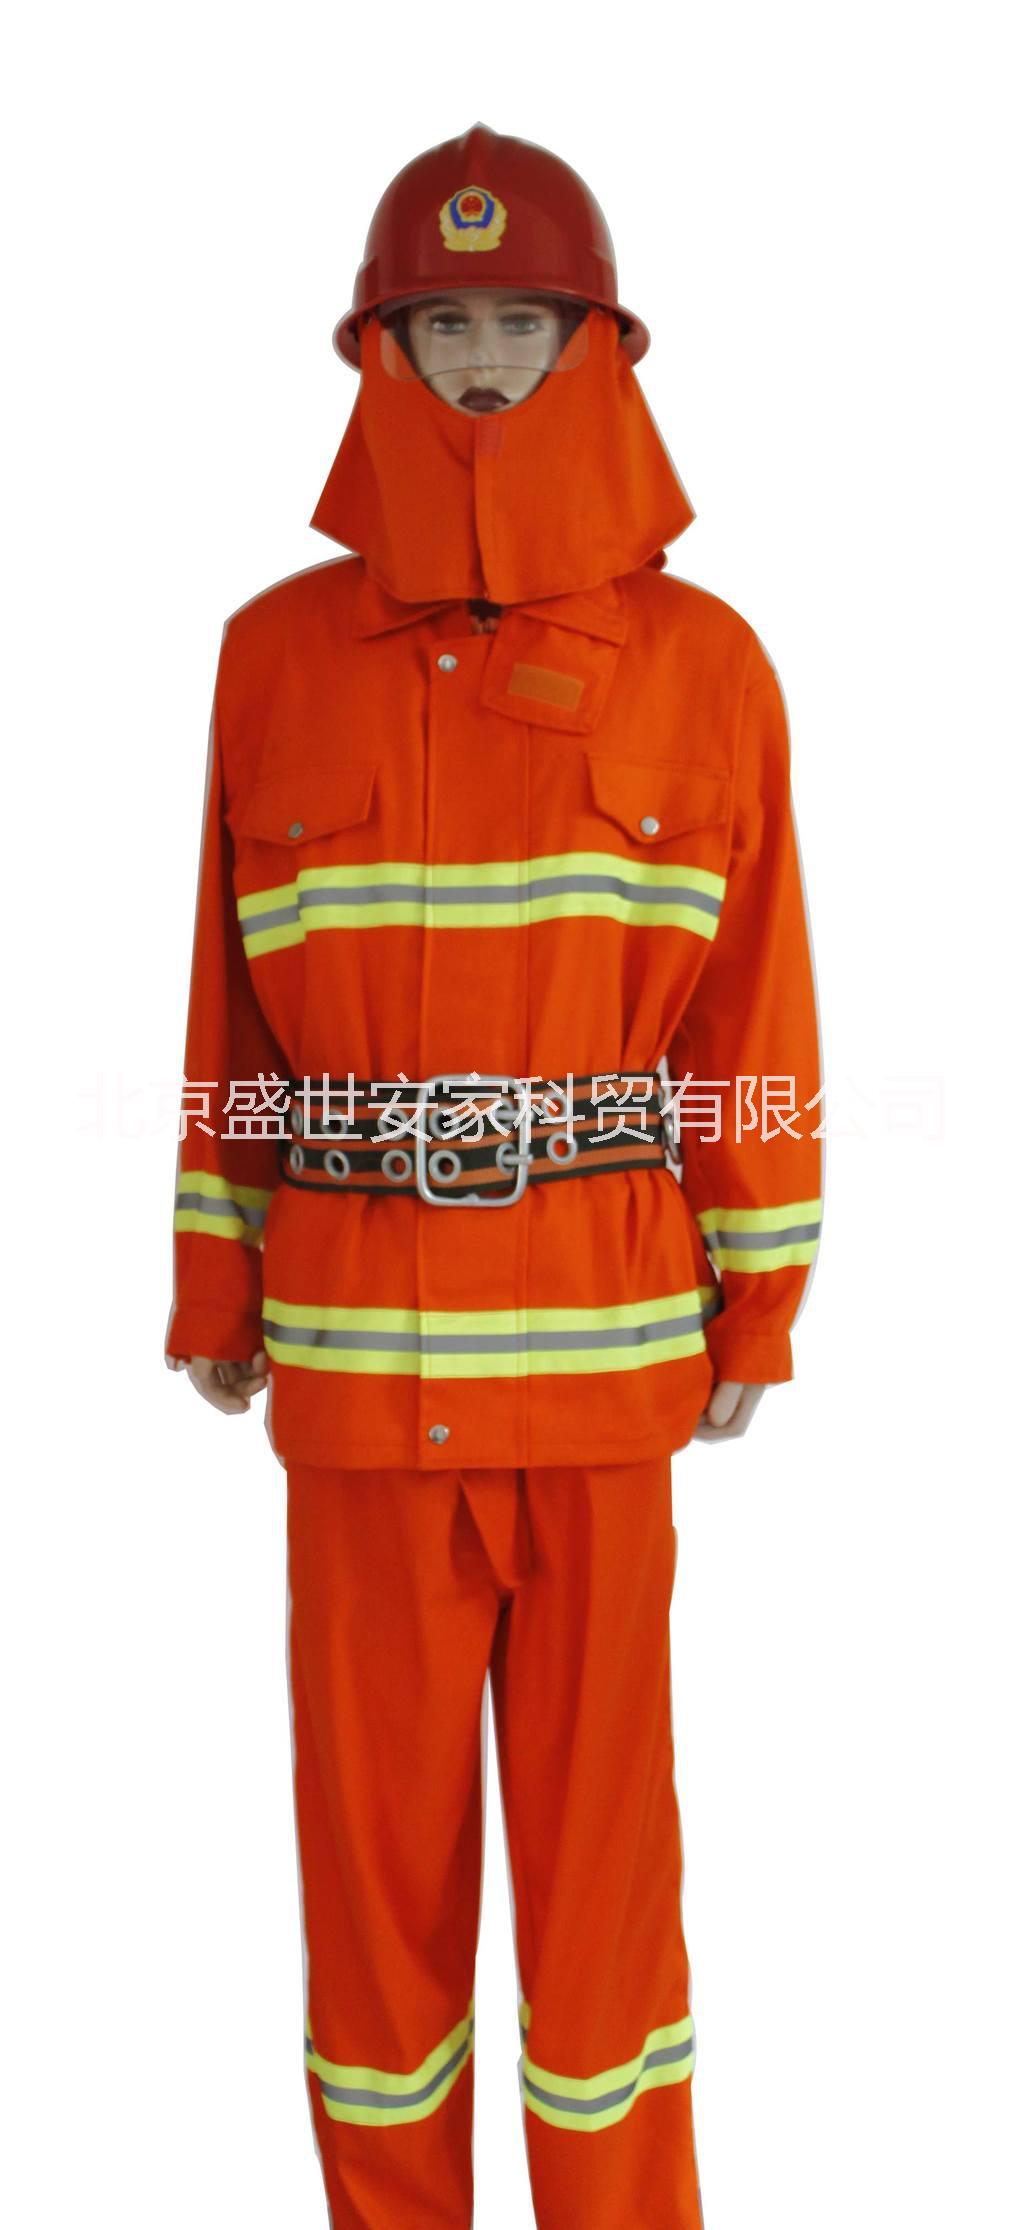 北京市97款消防头盔、桔红色消防头盔厂家供应97款消防头盔、桔红色消防头盔13439983864消防头盔